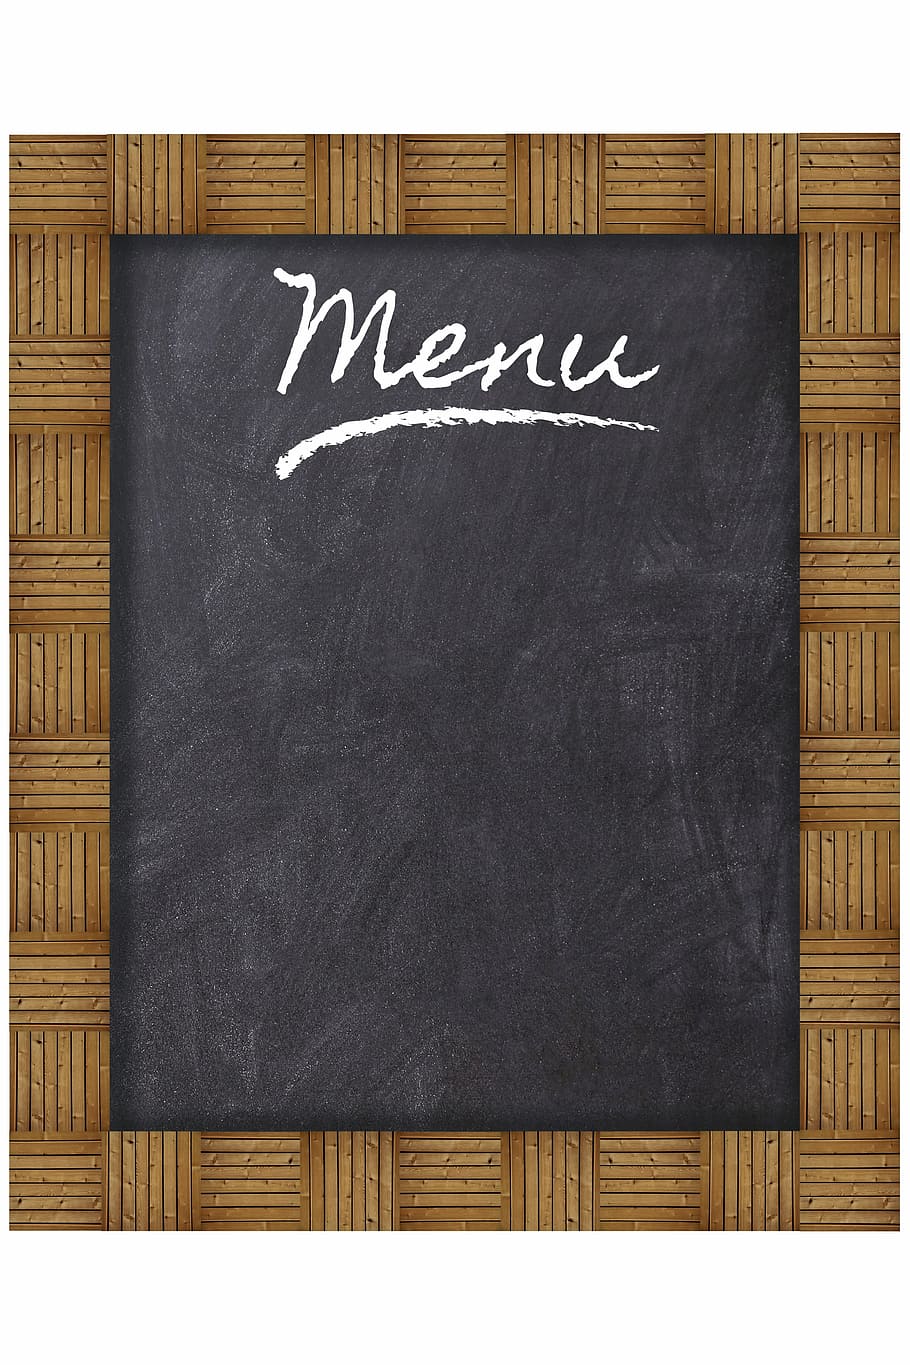 livro de menu preto, quadro, madeira, conselho de administração, menu, restaurante, comer, ardósia, quadro-negro, educação